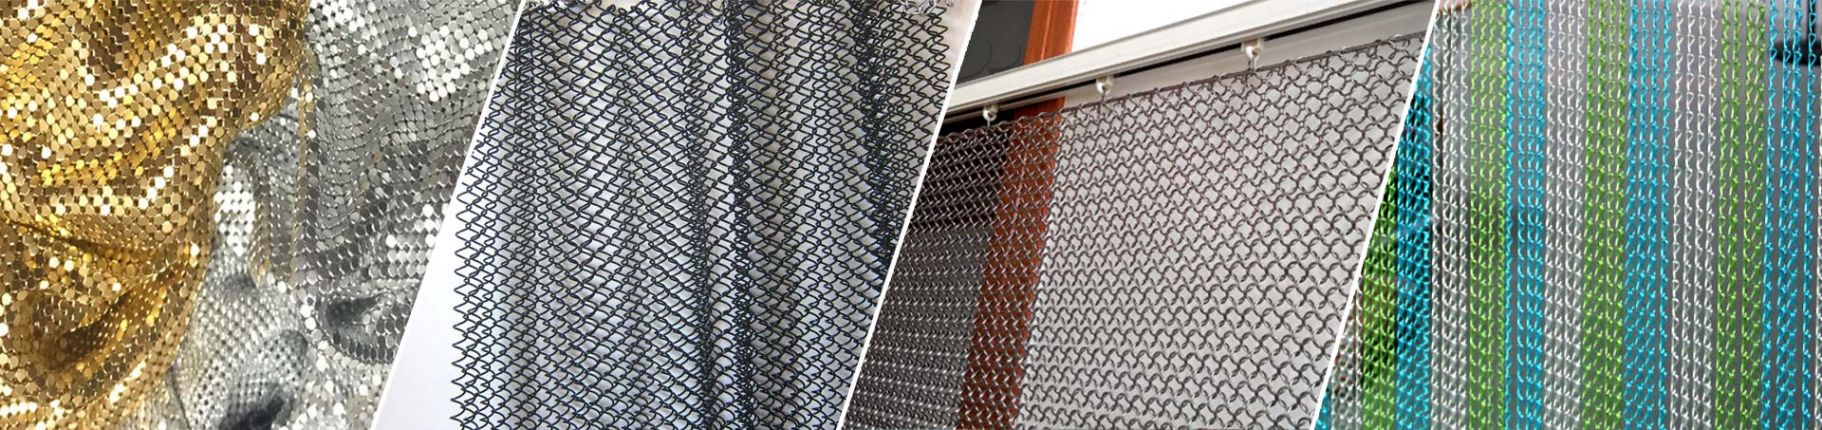 Metal mesh curtain